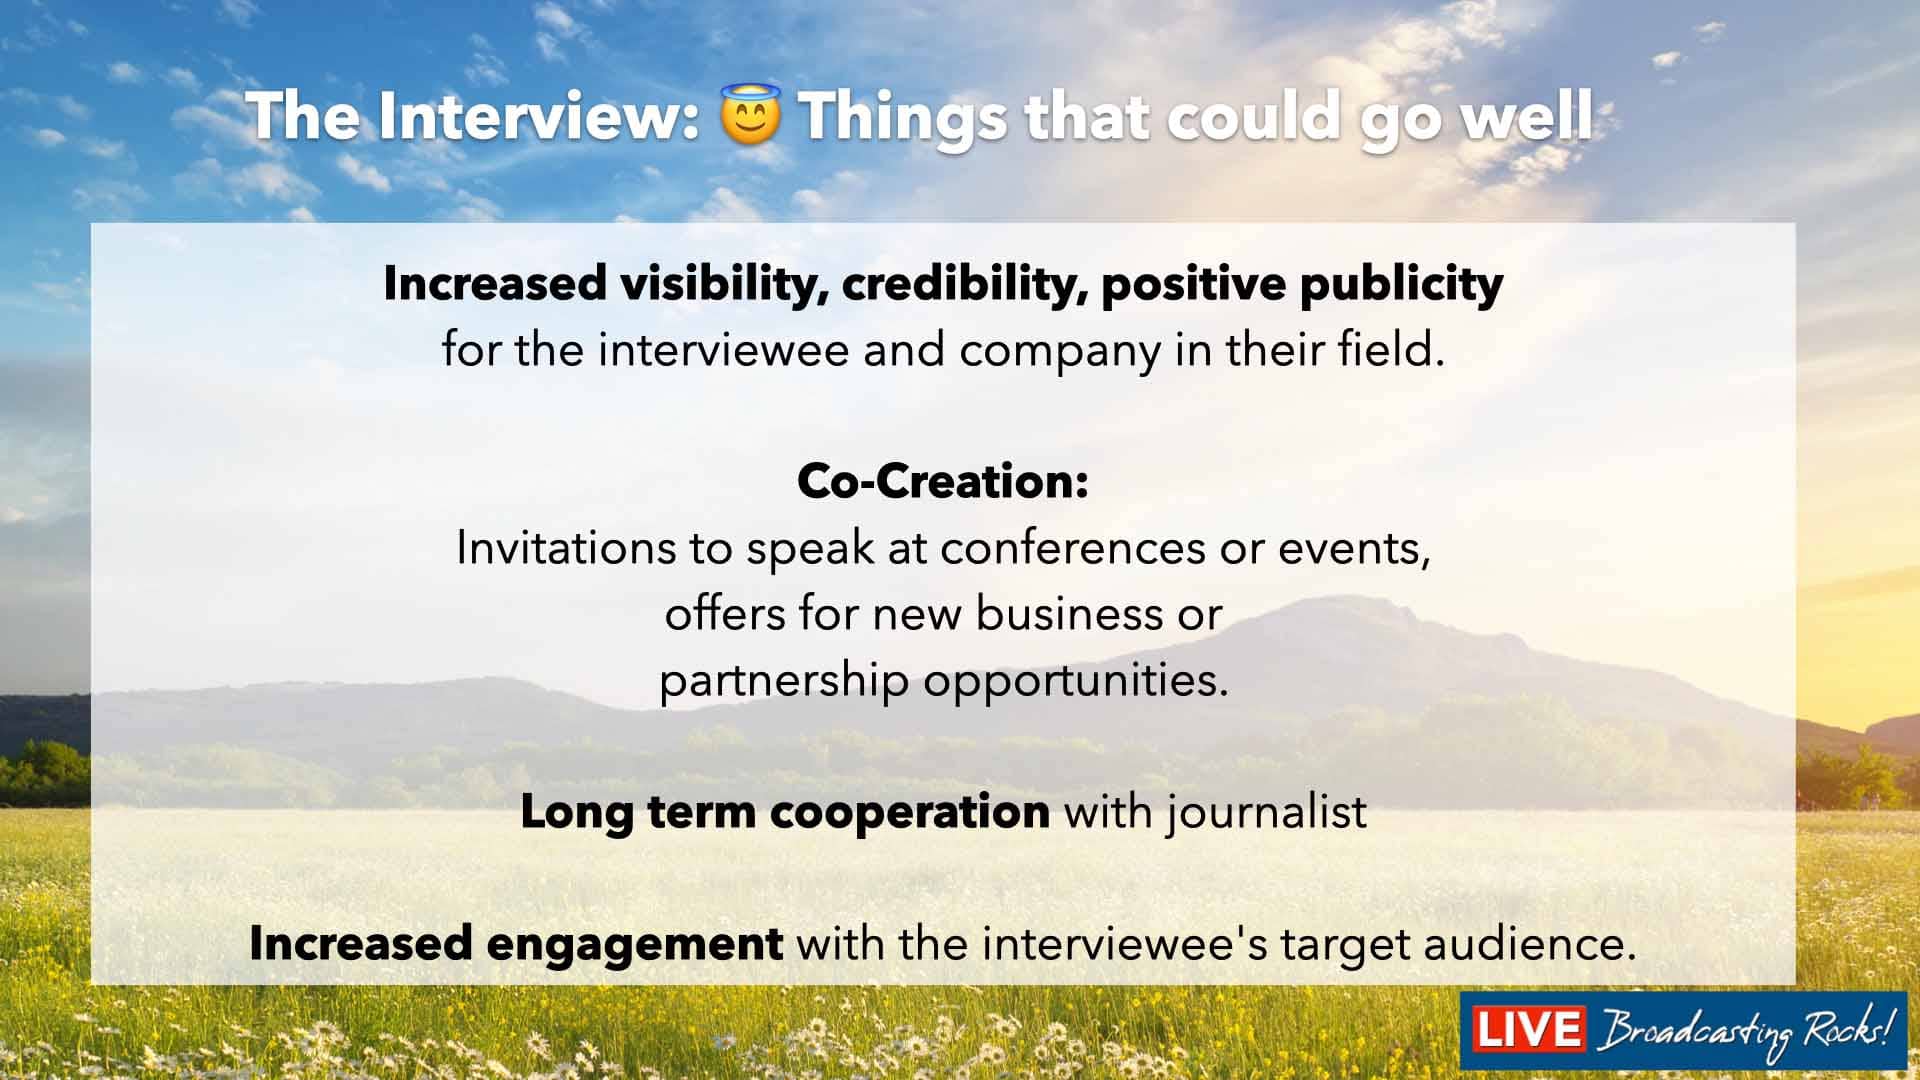 Une interview médiatique réussie peut apporter plusieurs avantages à la fois à la personne interviewée et à son organisation. Voici quelques-uns des avantages potentiels